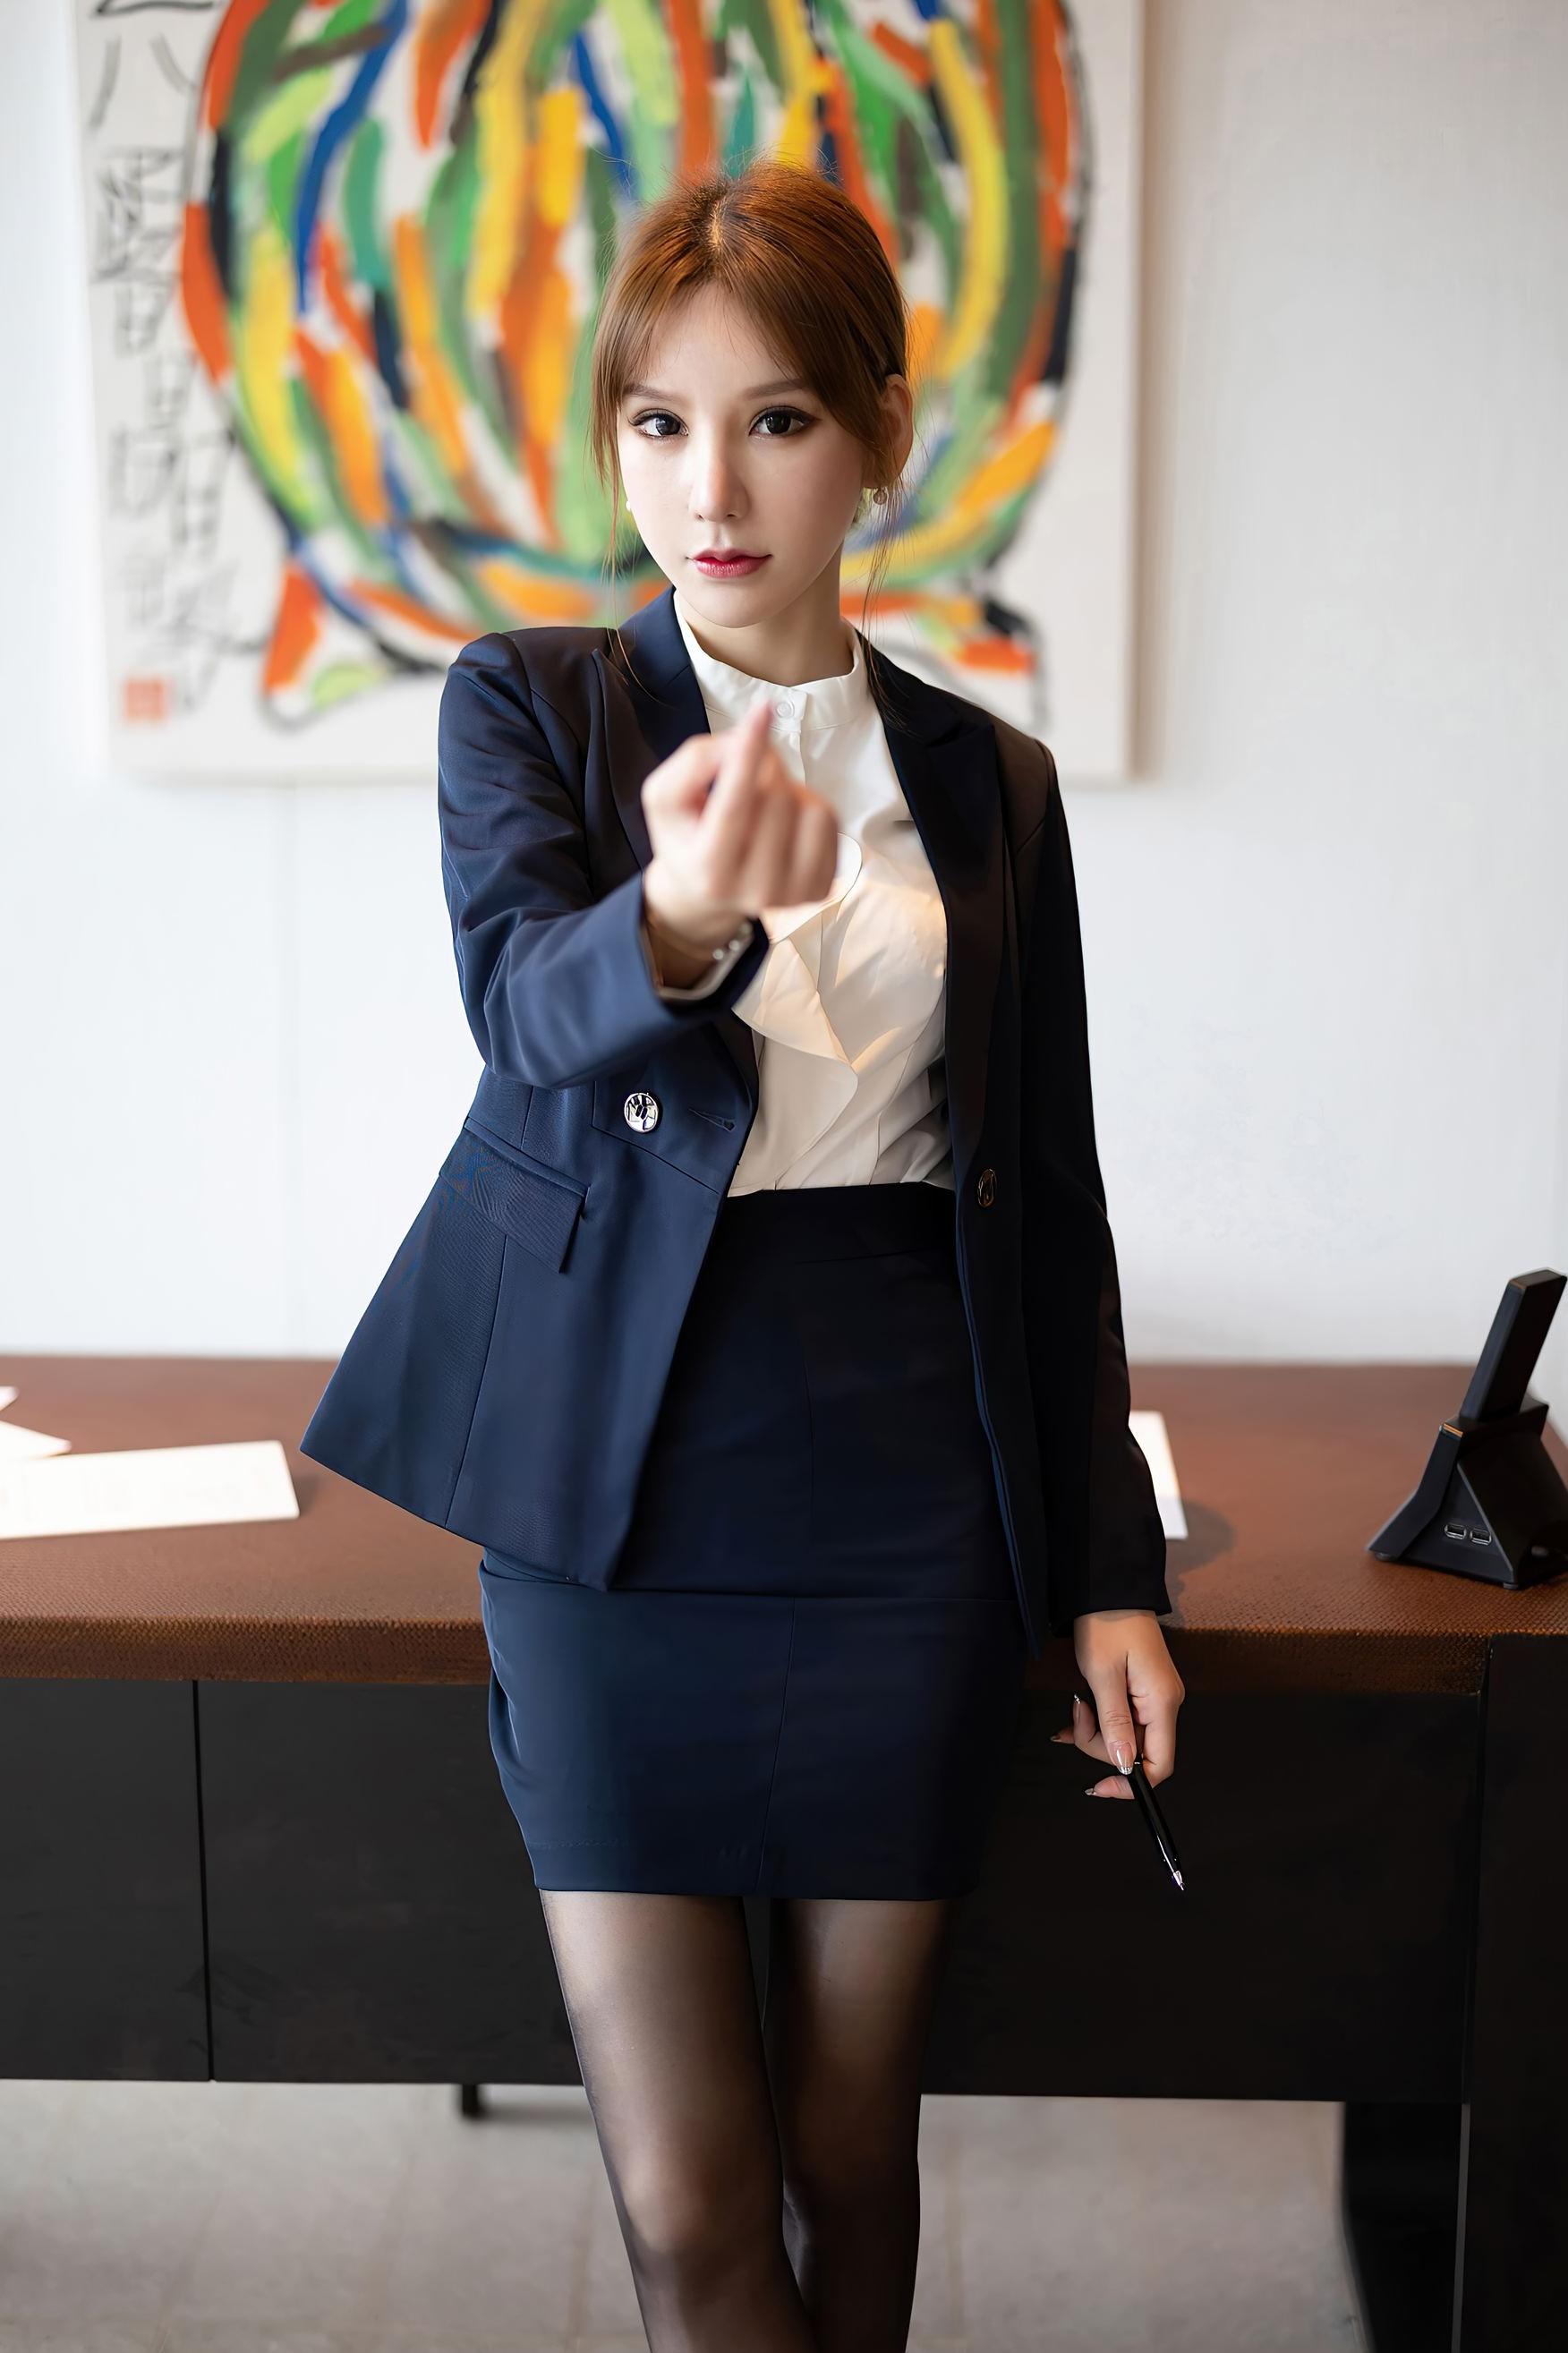 白领女性或者办公室女职员都可以统称为officelady,她们打扮入时衣着